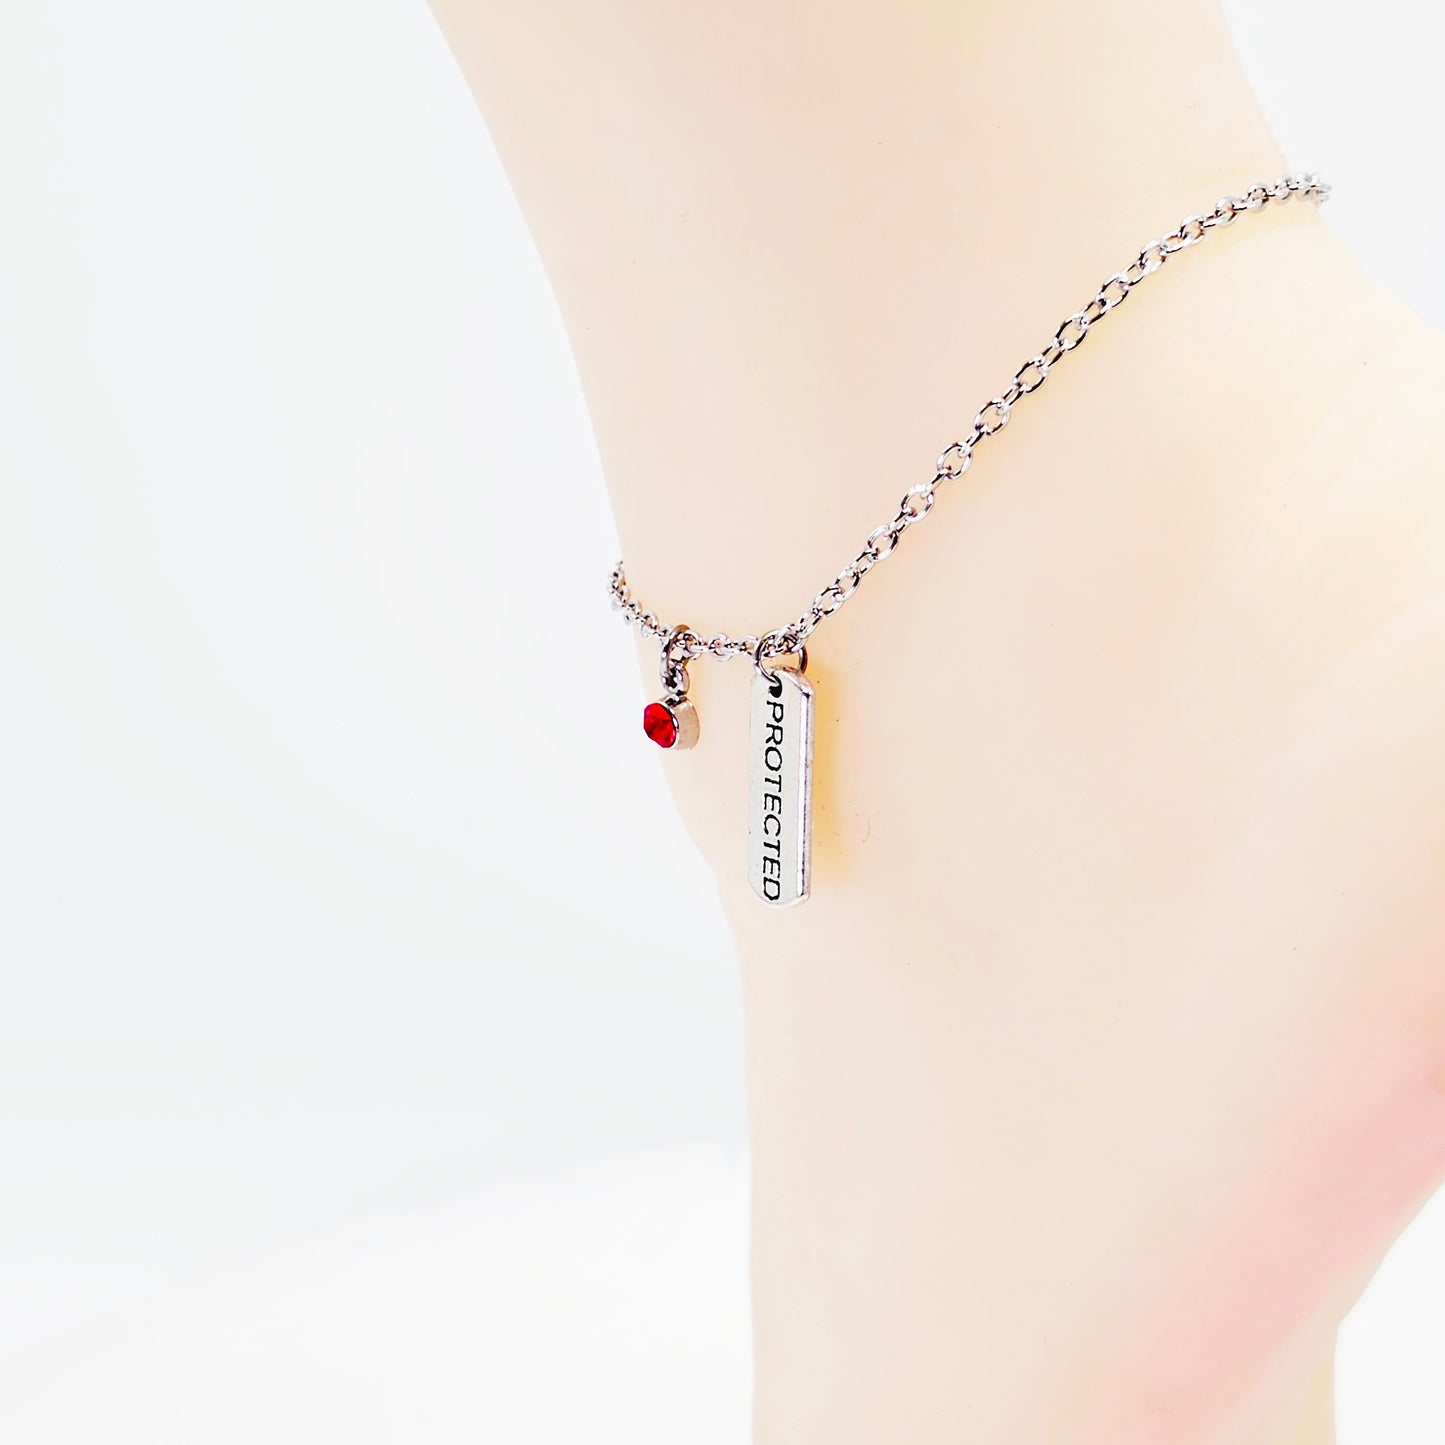 Protected Anklet with Gem. Ankle Bracelet for Women. BDSM